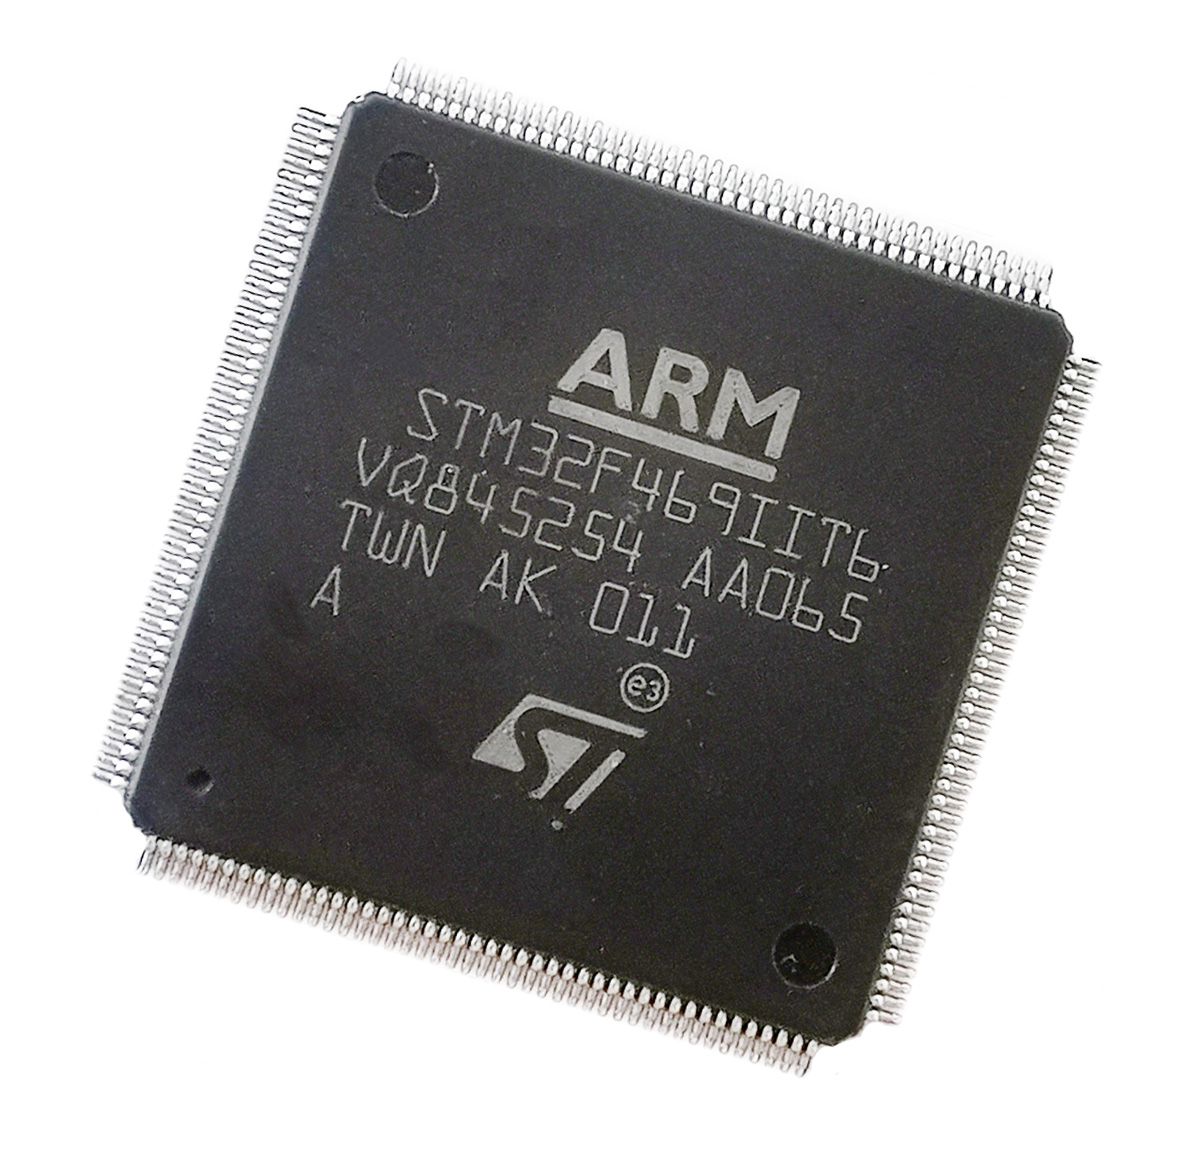 STM32 chip